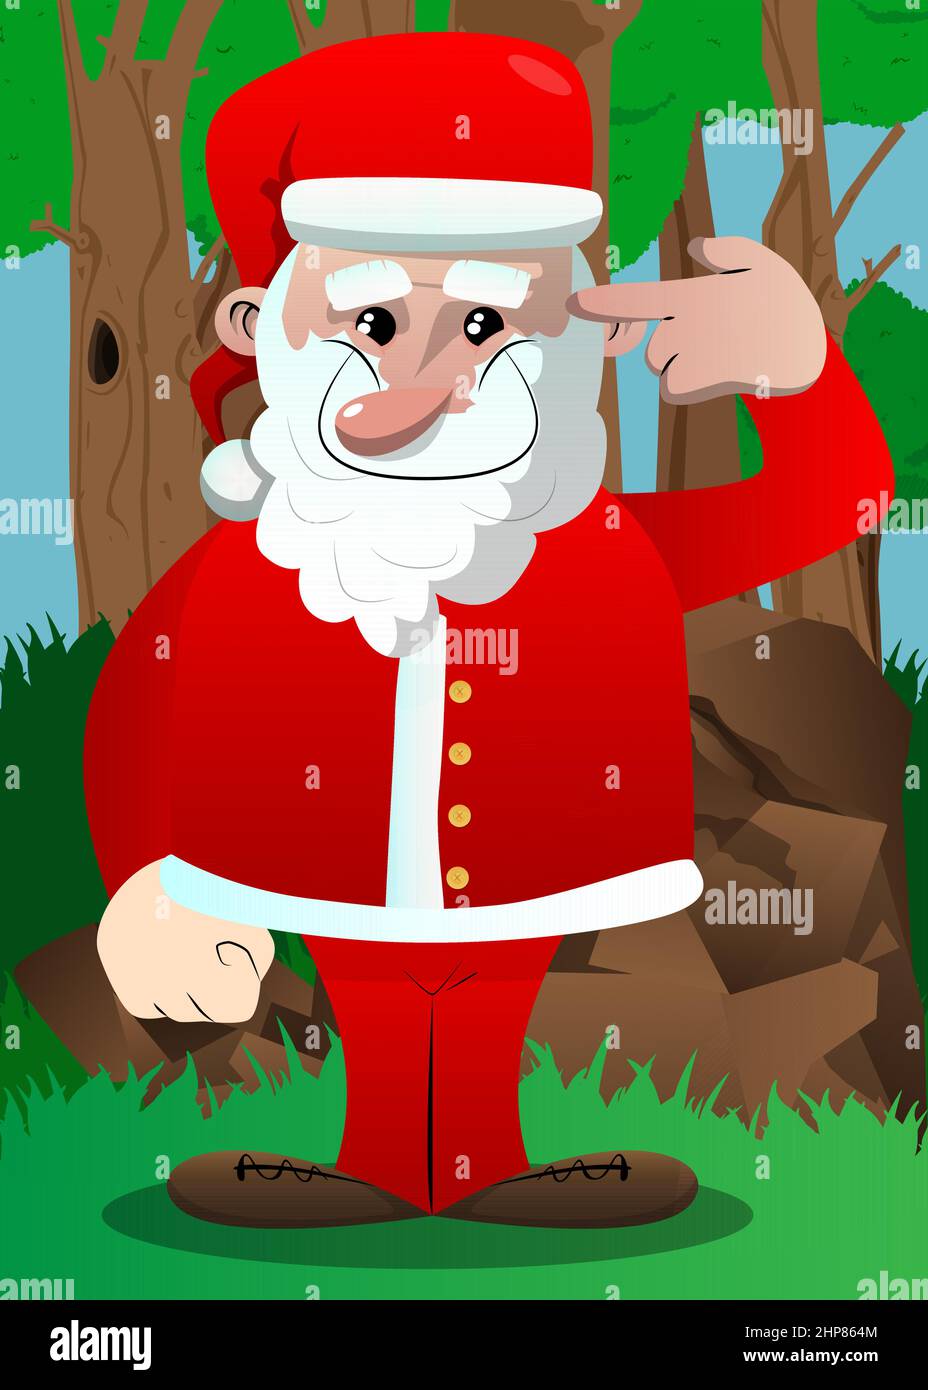 Babbo Natale nei suoi vestiti rossi con barba bianca mettendo una pistola immaginaria alla sua testa. Illustrazione Vettoriale